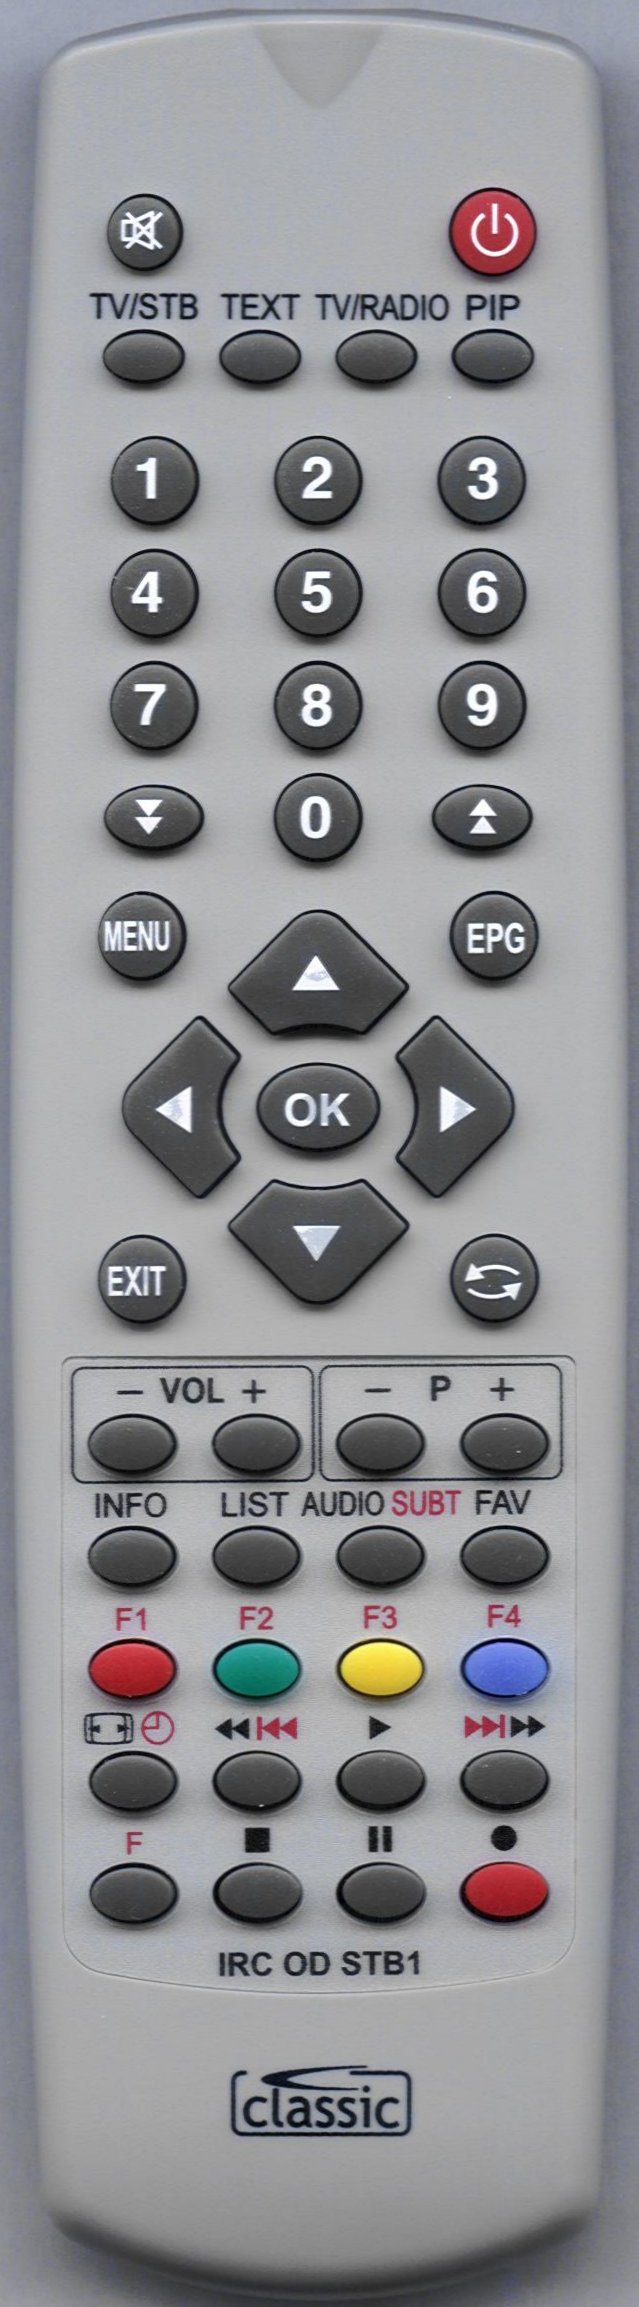 HUMAX HD NANO FREE Remote Control